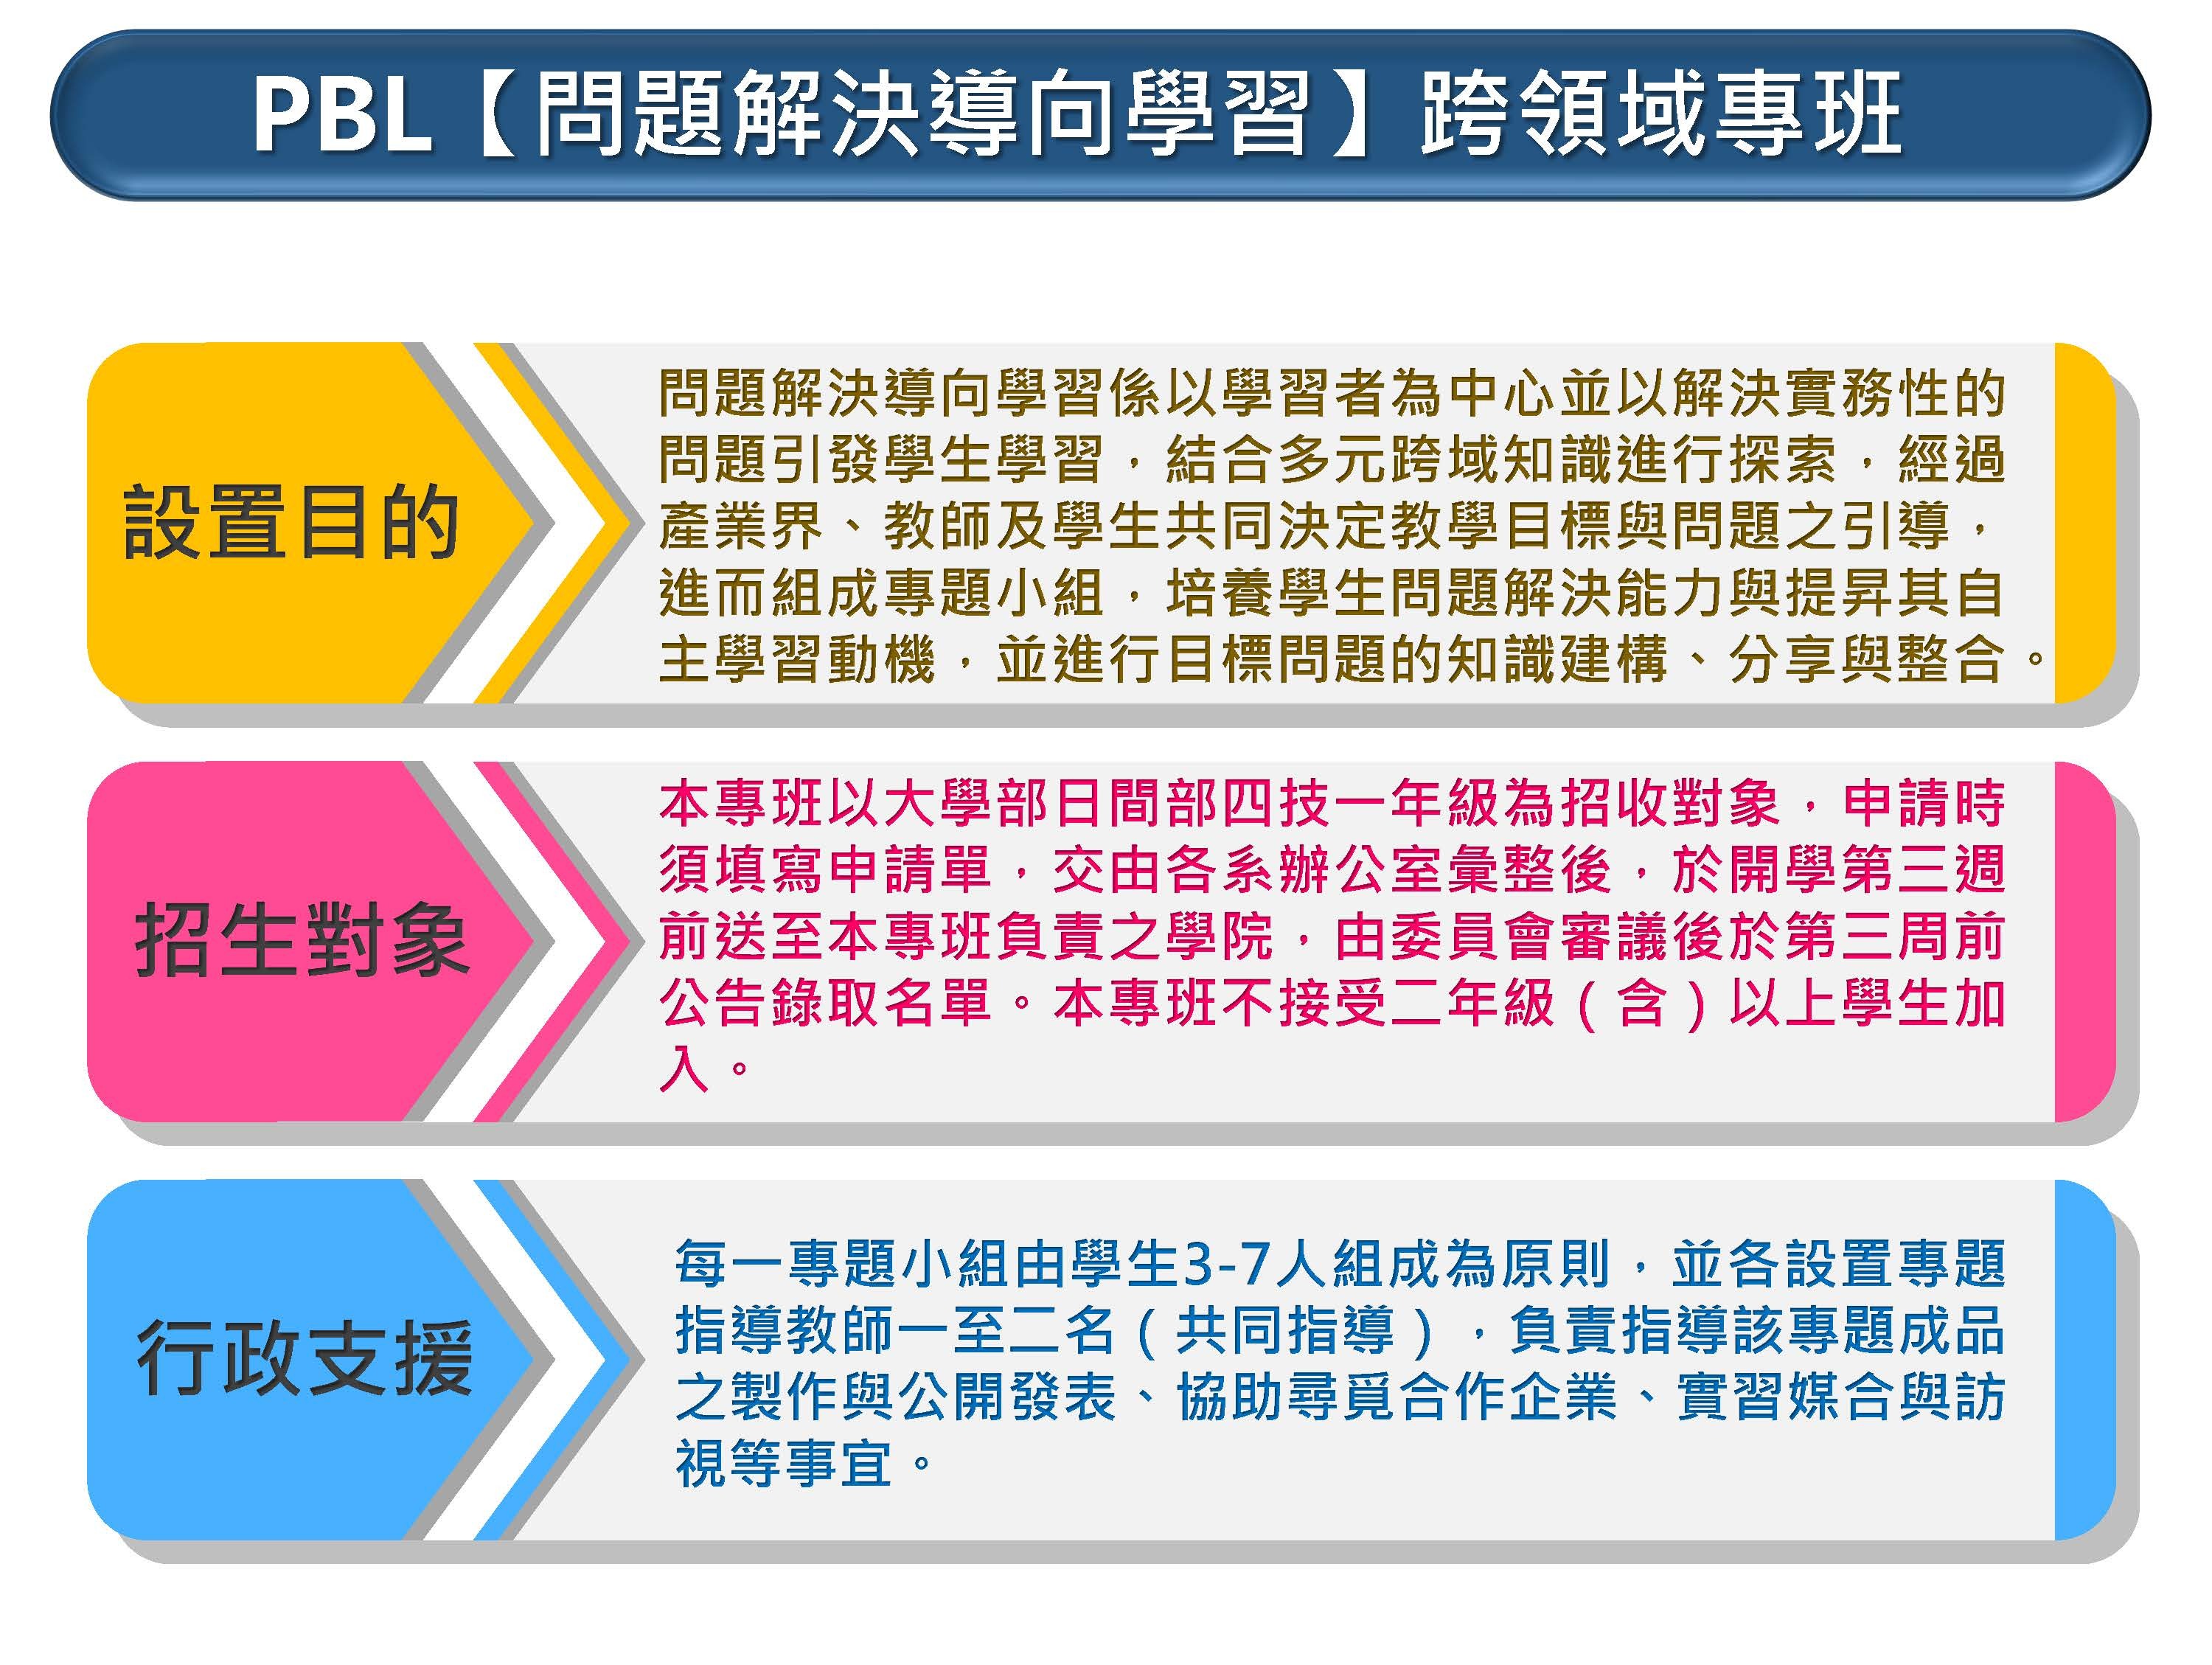 PBL(物聯網)跨領域專班招生對照說明示意圖